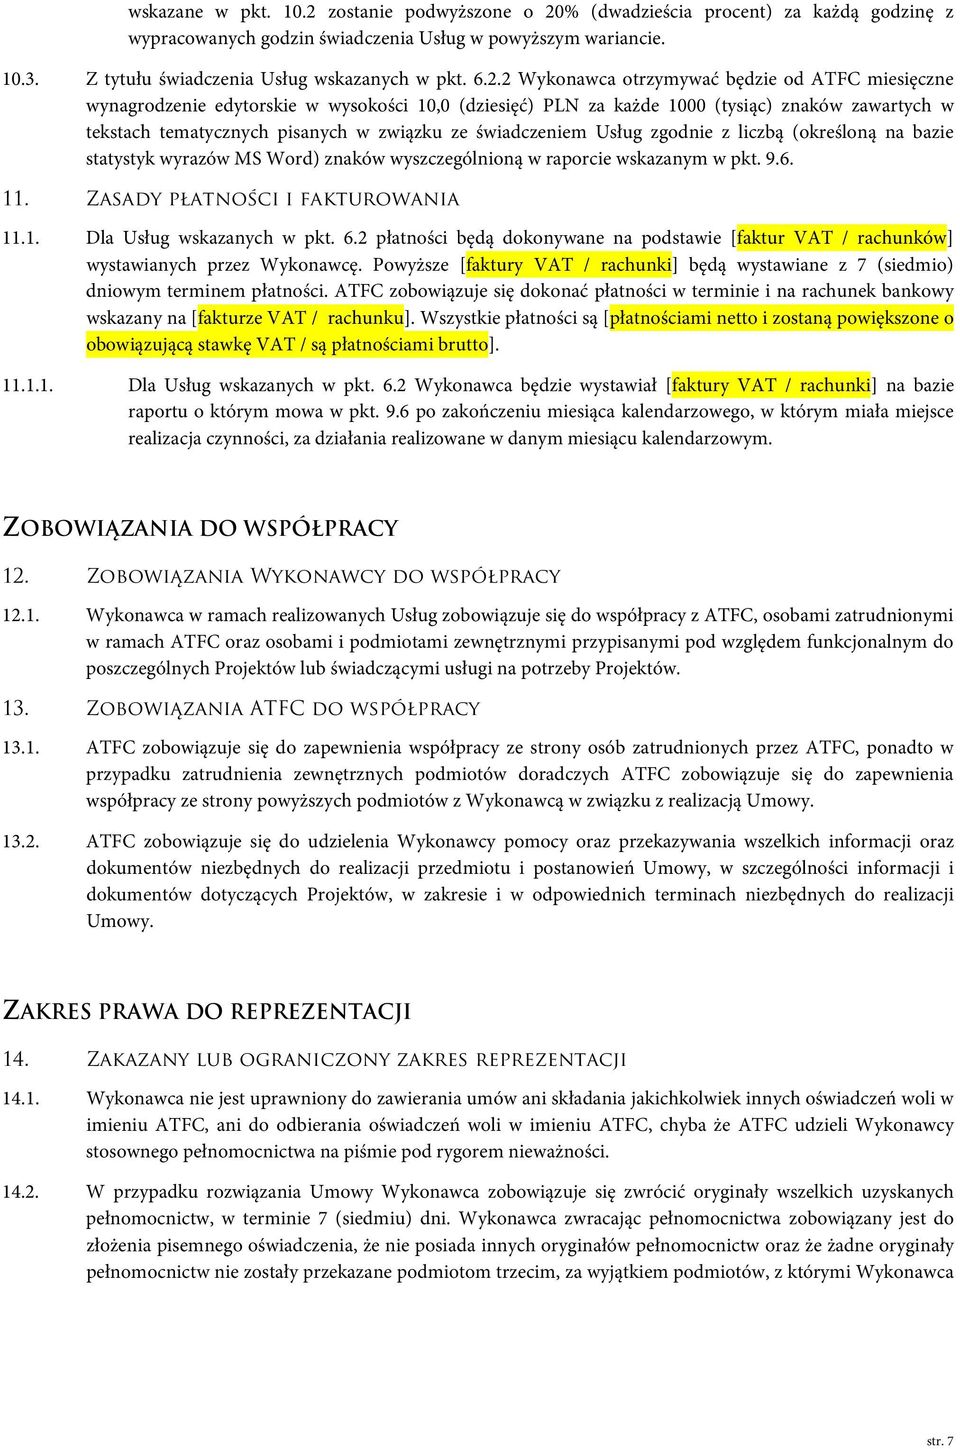 2 Wykonawca otrzymywać będzie od ATFC miesięczne wynagrodzenie edytorskie w wysokości 10,0 (dziesięć) PLN za każde 1000 (tysiąc) znaków zawartych w tekstach tematycznych pisanych w związku ze